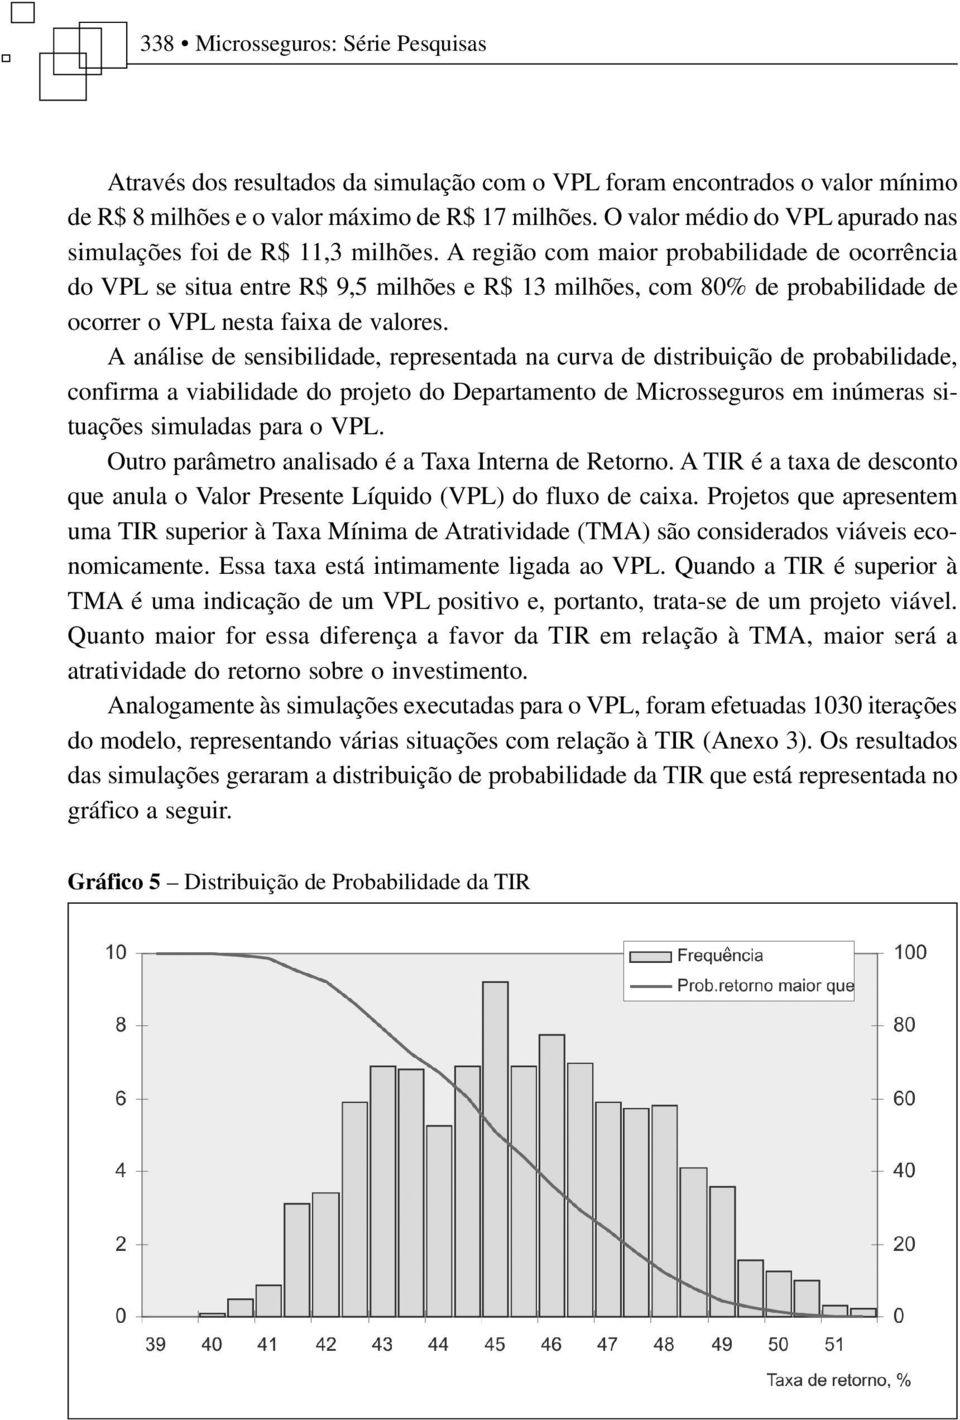 A região com maior probabilidade de ocorrência do VPL se situa entre R$ 9,5 milhões e R$ 13 milhões, com 80% de probabilidade de ocorrer o VPL nesta faixa de valores.